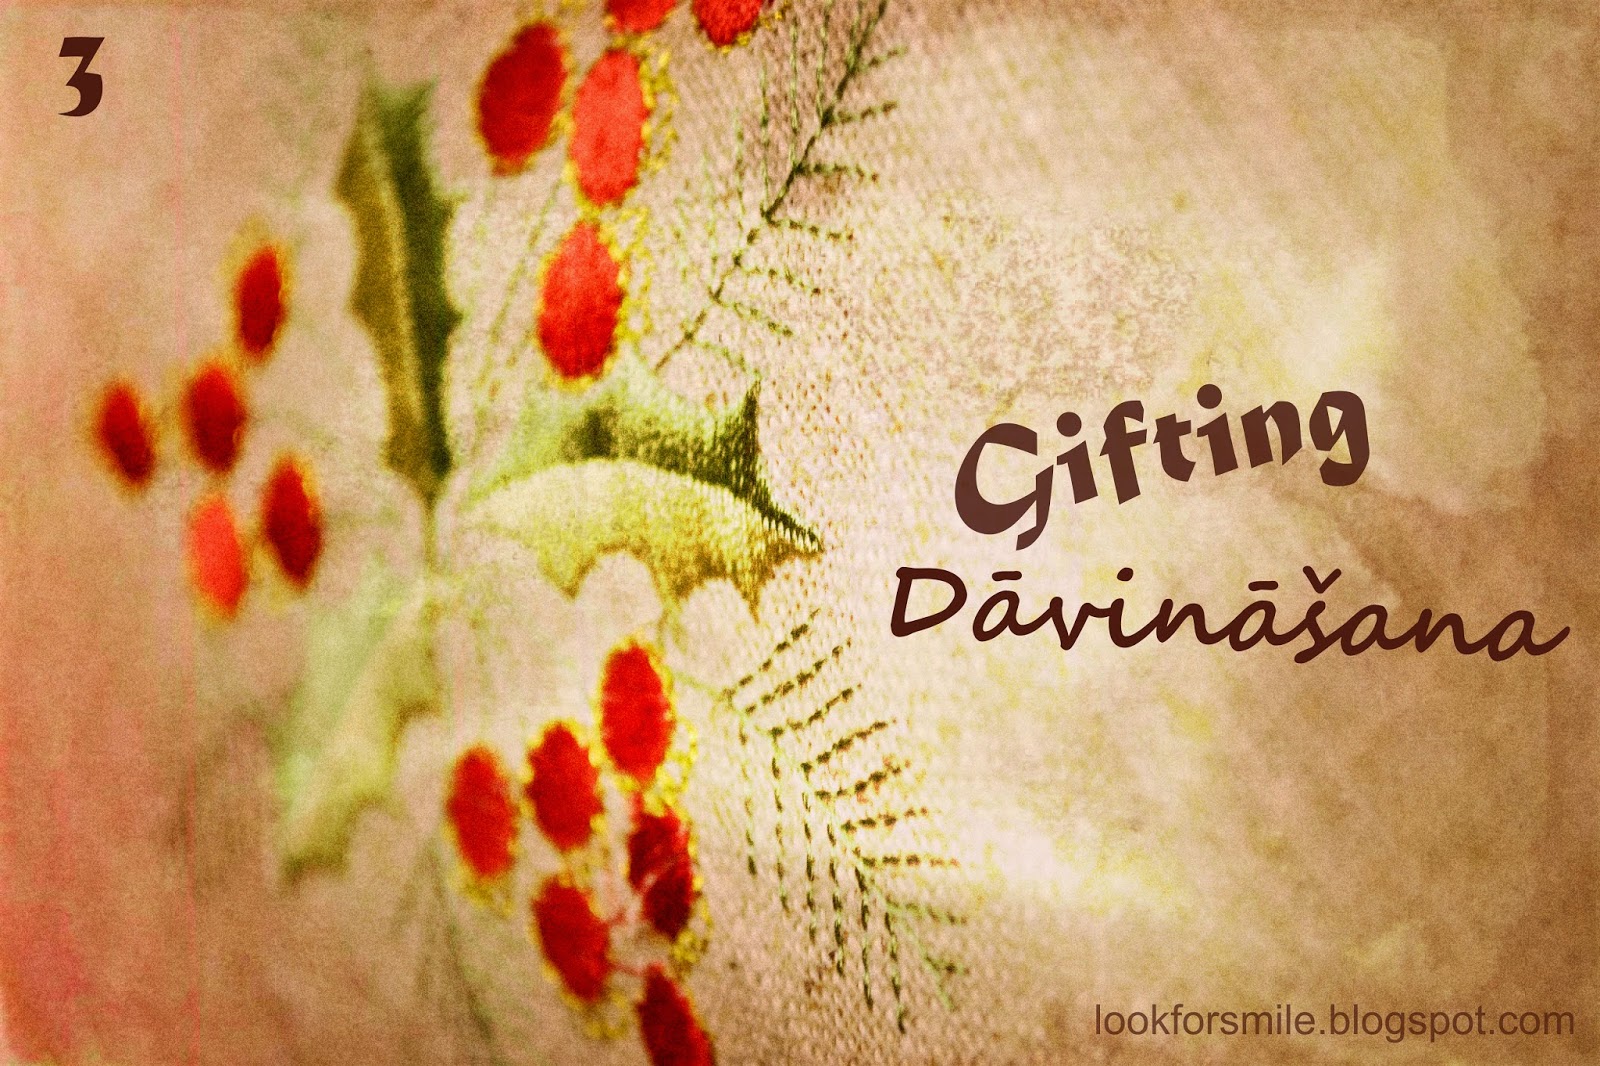 gifting / davinasana